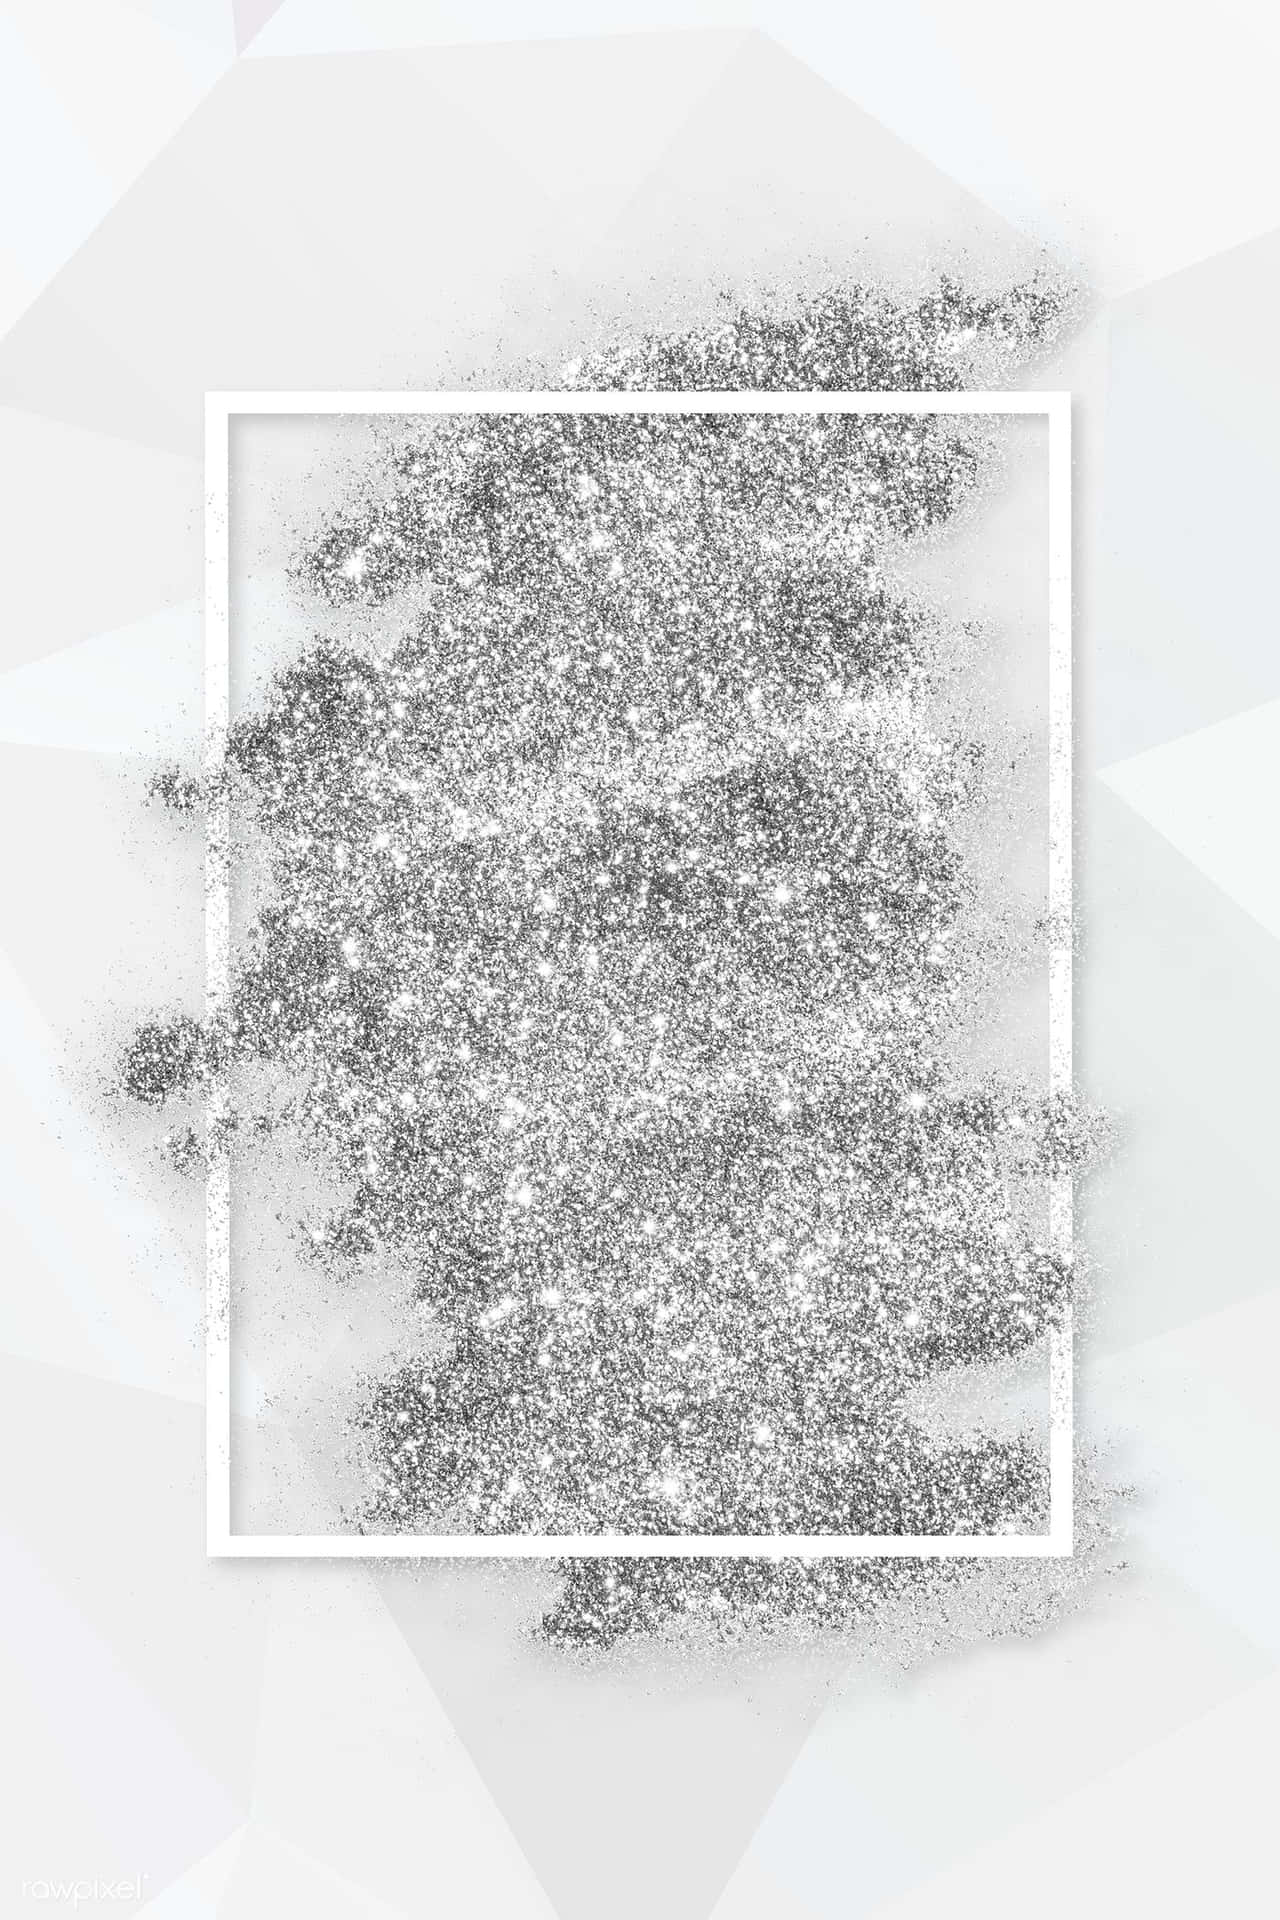 Et glimtende udstilling af hvid glimmer kastet i luften. Wallpaper